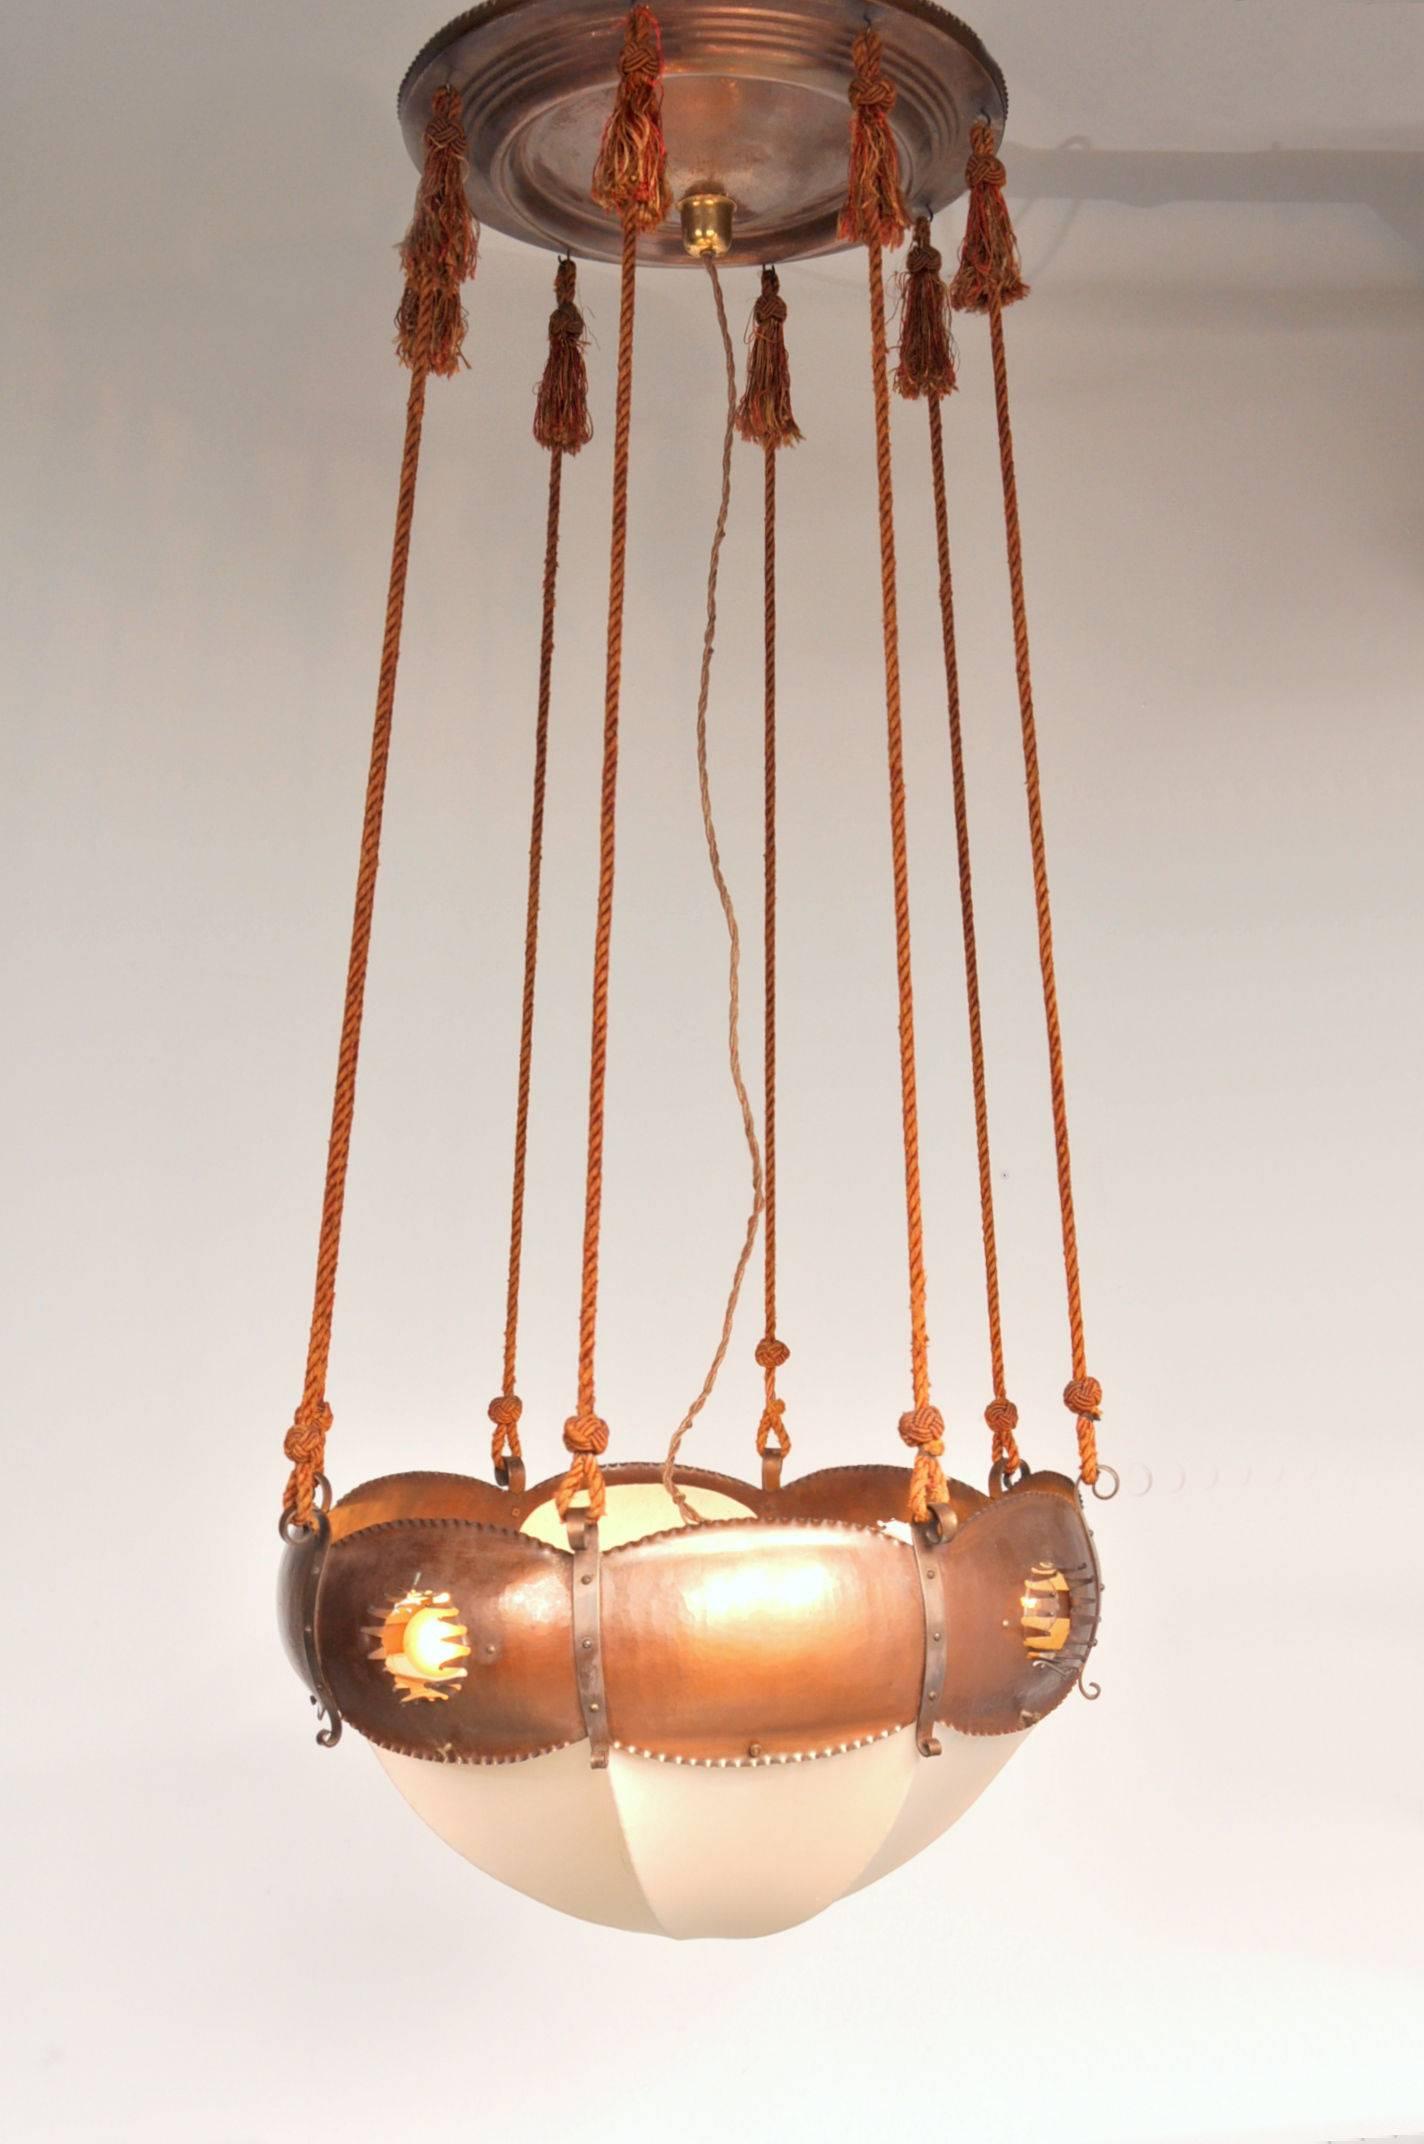 Auffällige Deckenleuchte, entworfen und hergestellt von Winkelman & Van der Bijl, hergestellt in den Niederlanden, um 1925.

Die Leuchte ist aus hochwertigem, durchbrochenem und ziseliertem Kupfer gefertigt, mit Seilträgern und einem Schirm aus